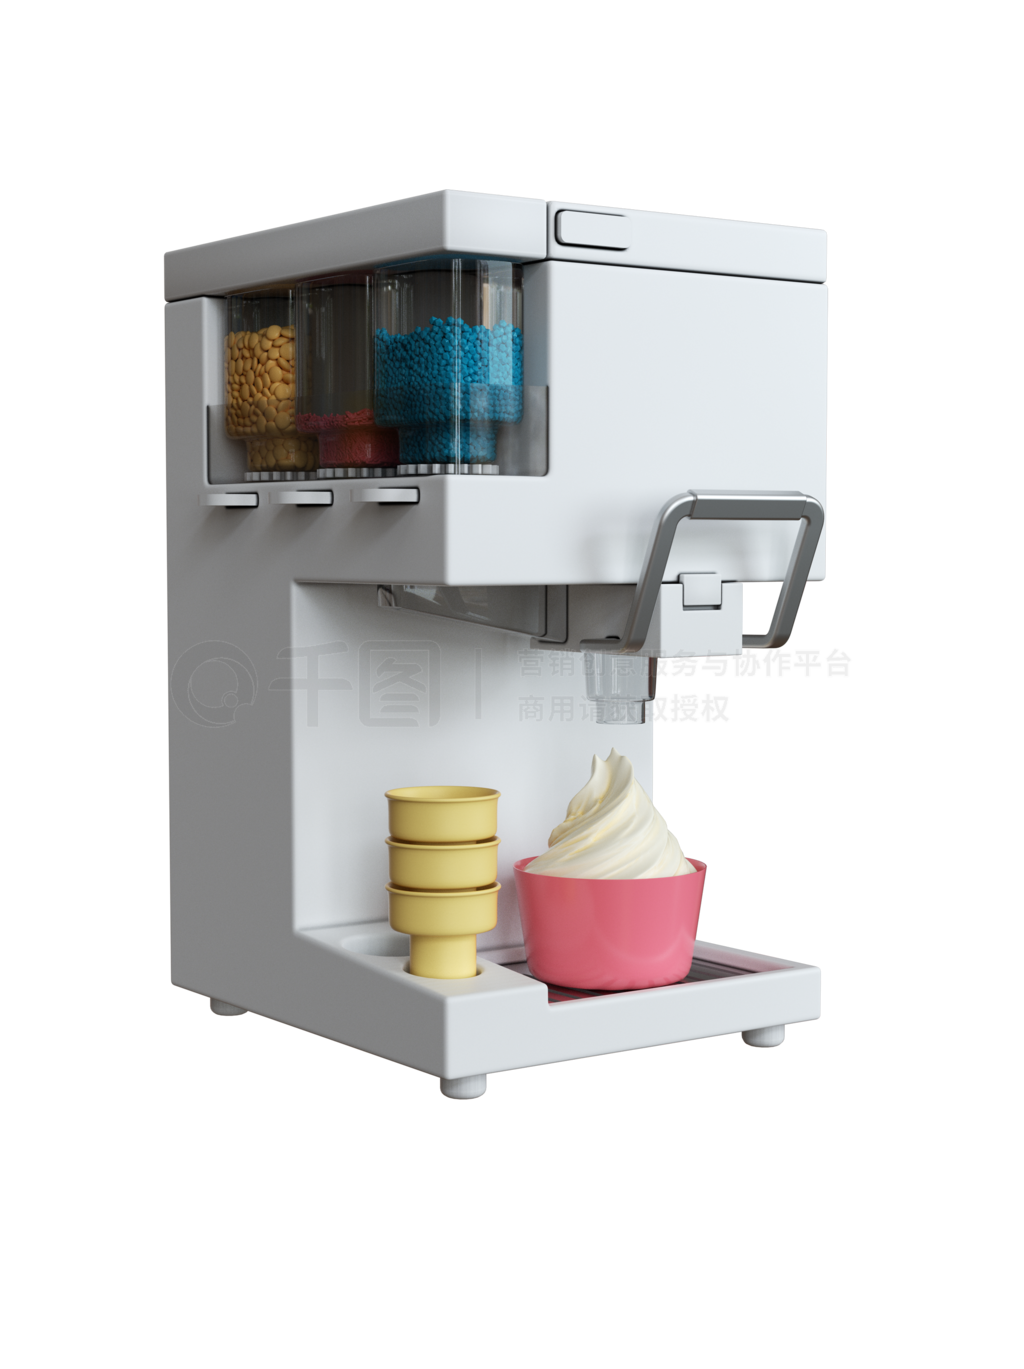 智能冰淇淋机 - ODM - 绵阳市攀丰智能制造有限公司